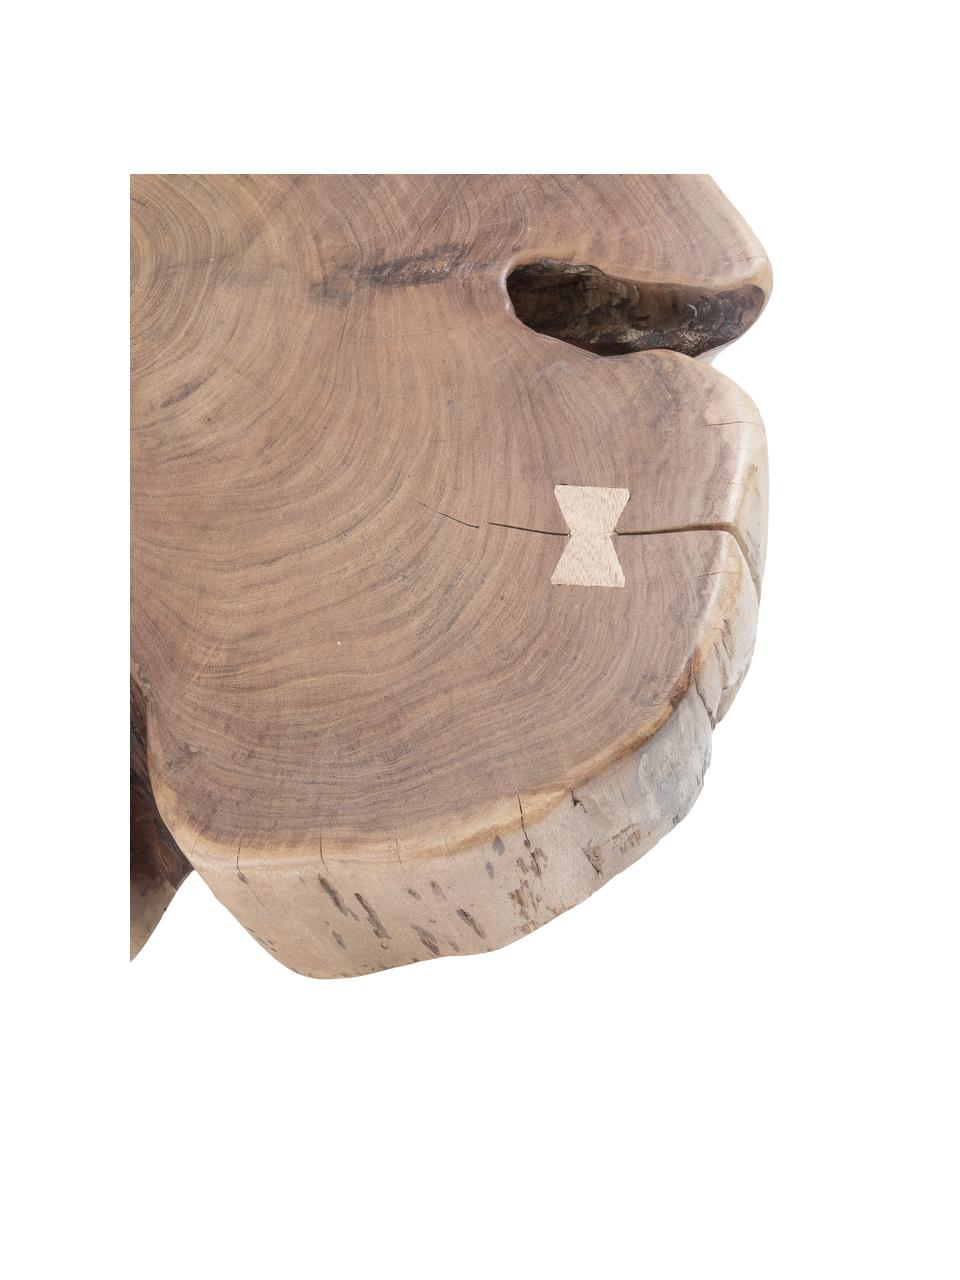 Massivholz-Couchtisch Essi mit Rollen, Tischplatte: Akazienholz, Füße: Stahl, Rollen: Kunststoff, Braun, Ø 65 x H 23 cm